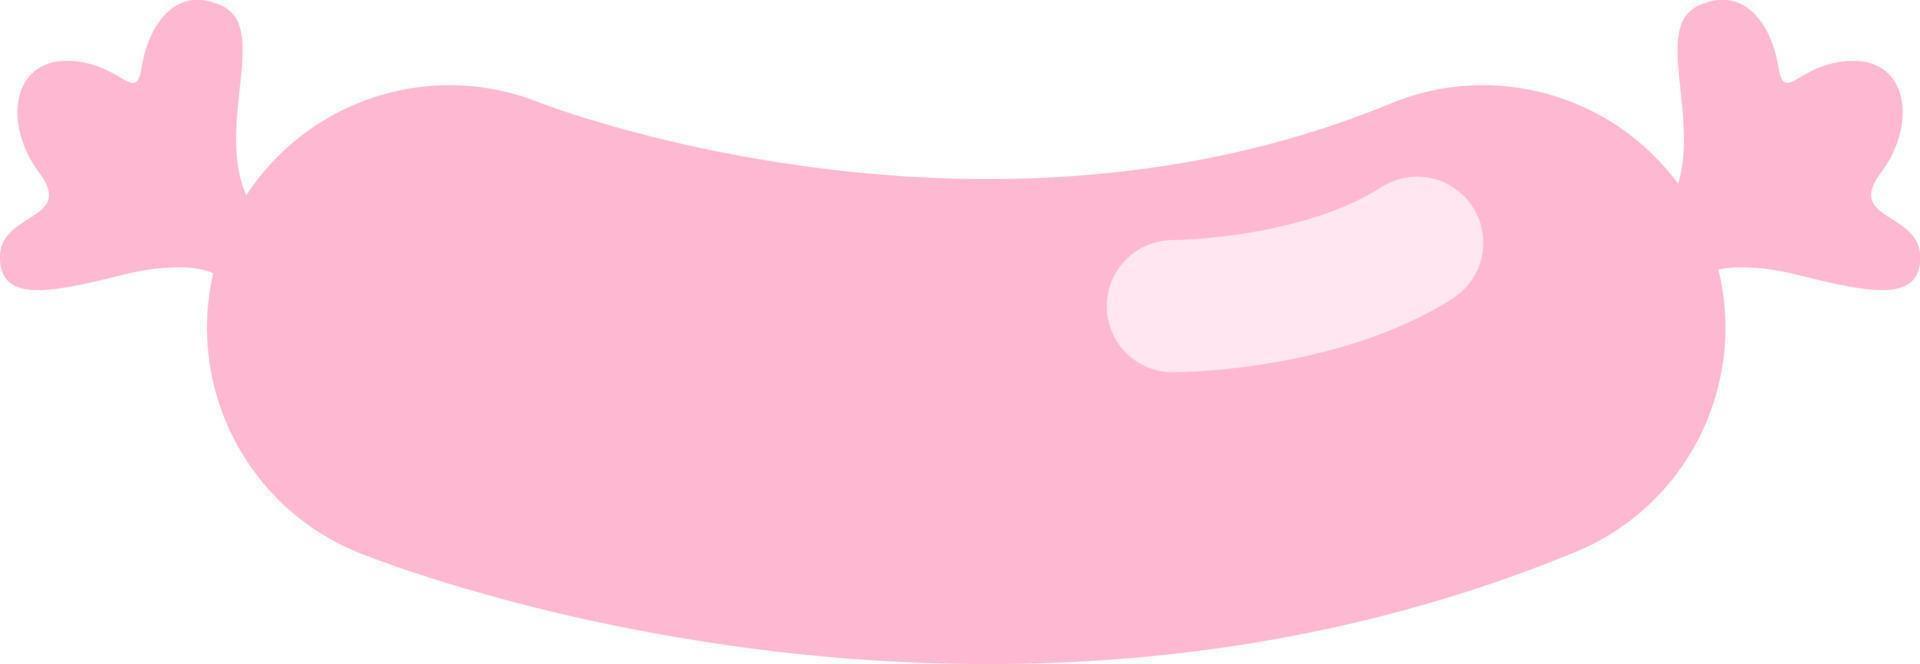 salchicha rosa, icono de ilustración, vector sobre fondo blanco